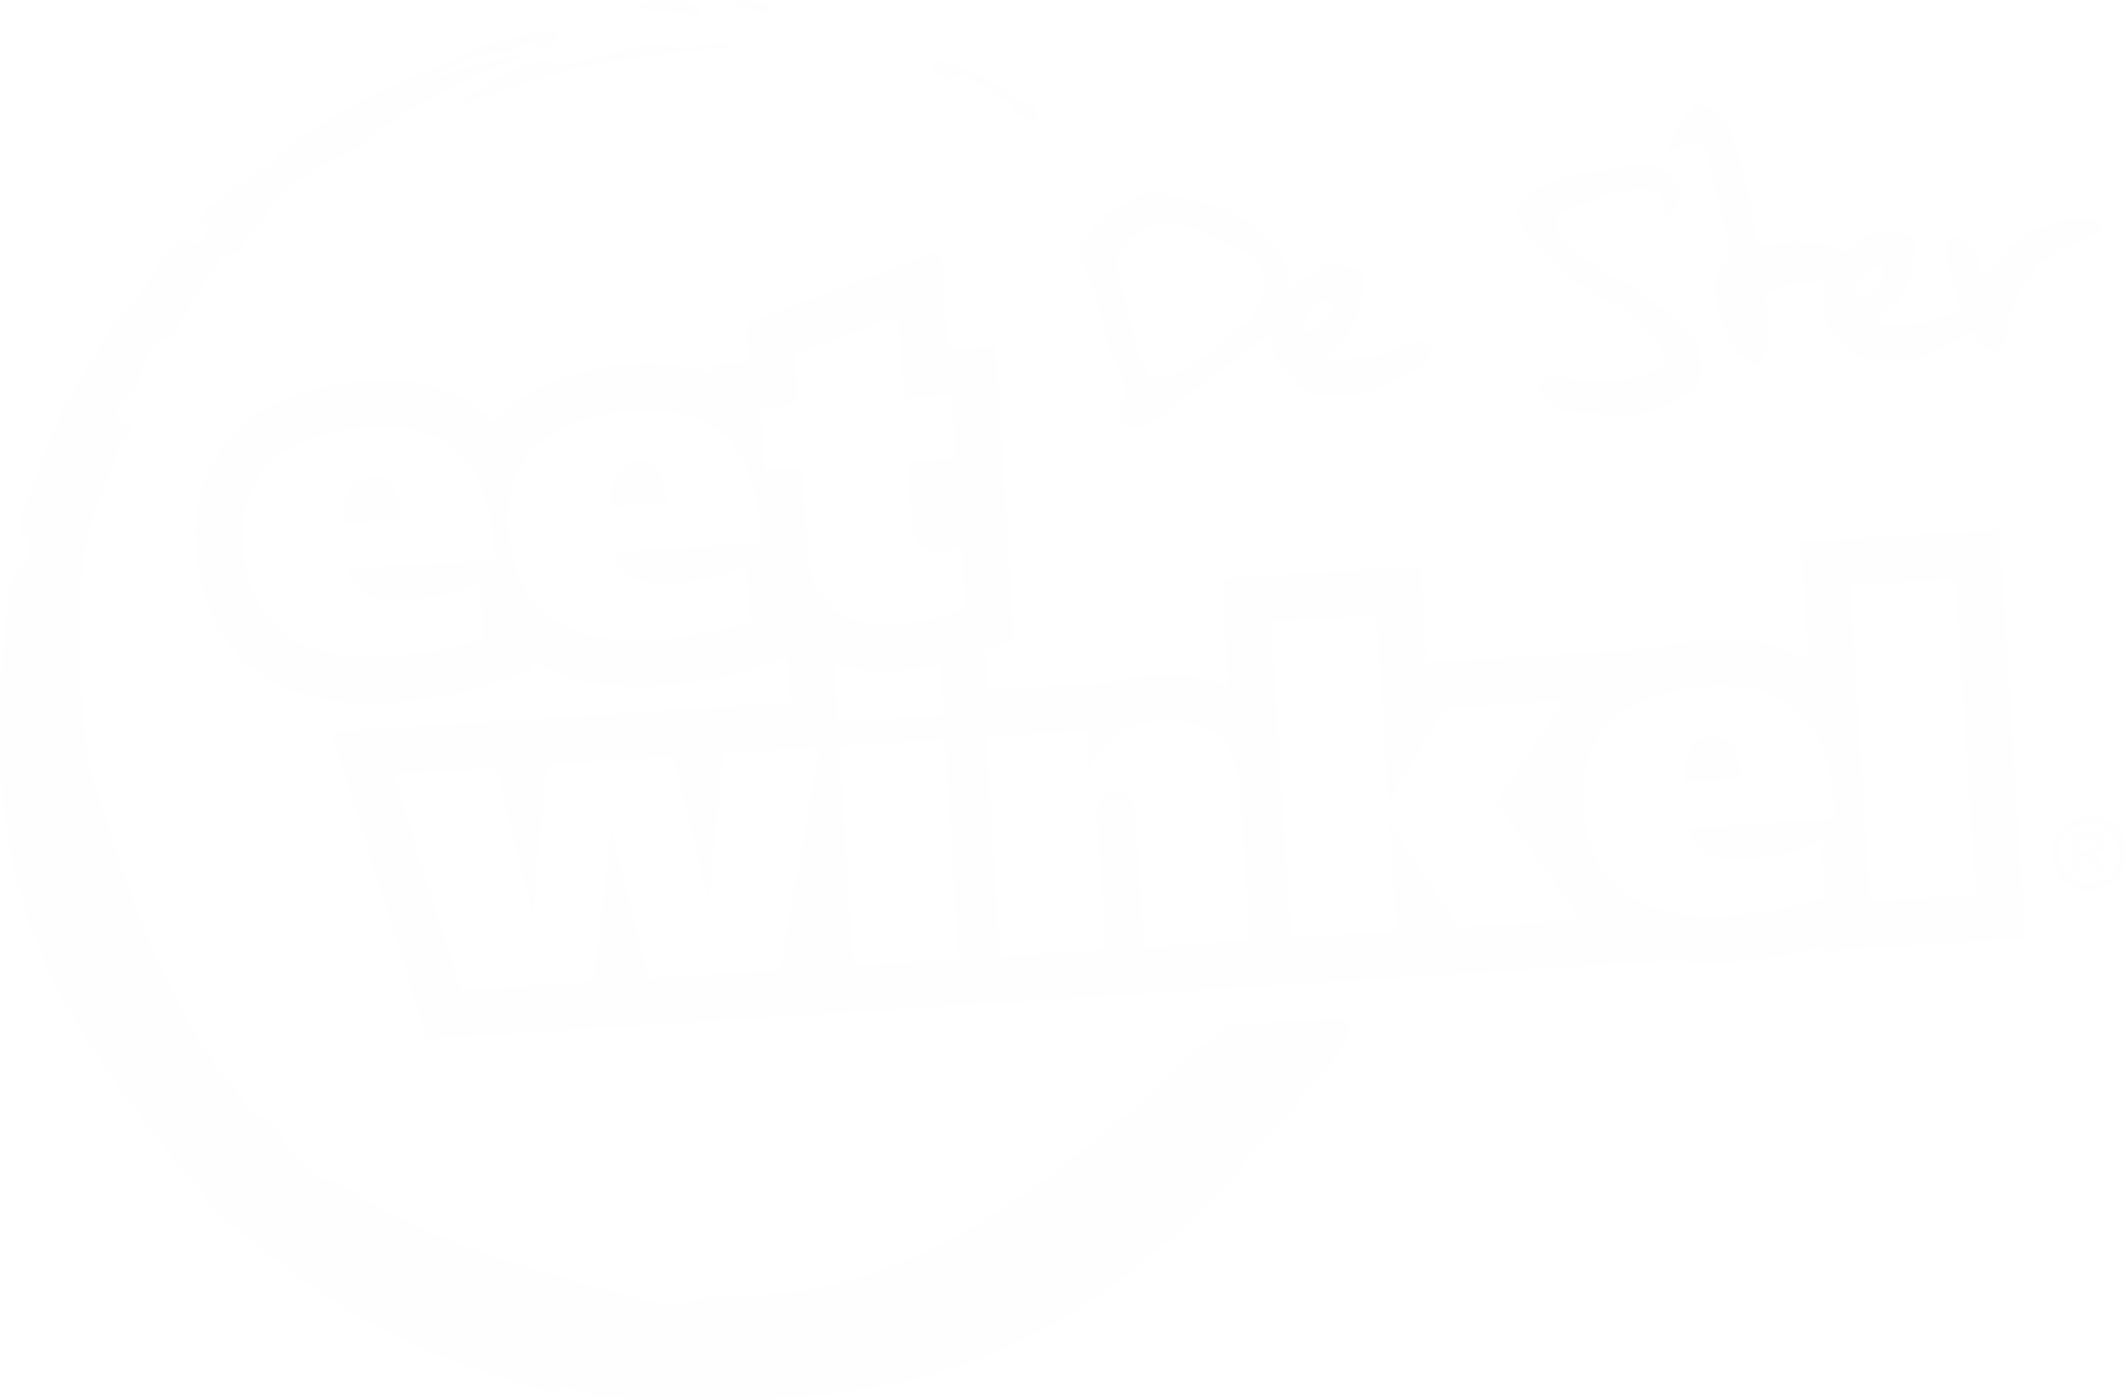 Eetwinkel De Ster Logo